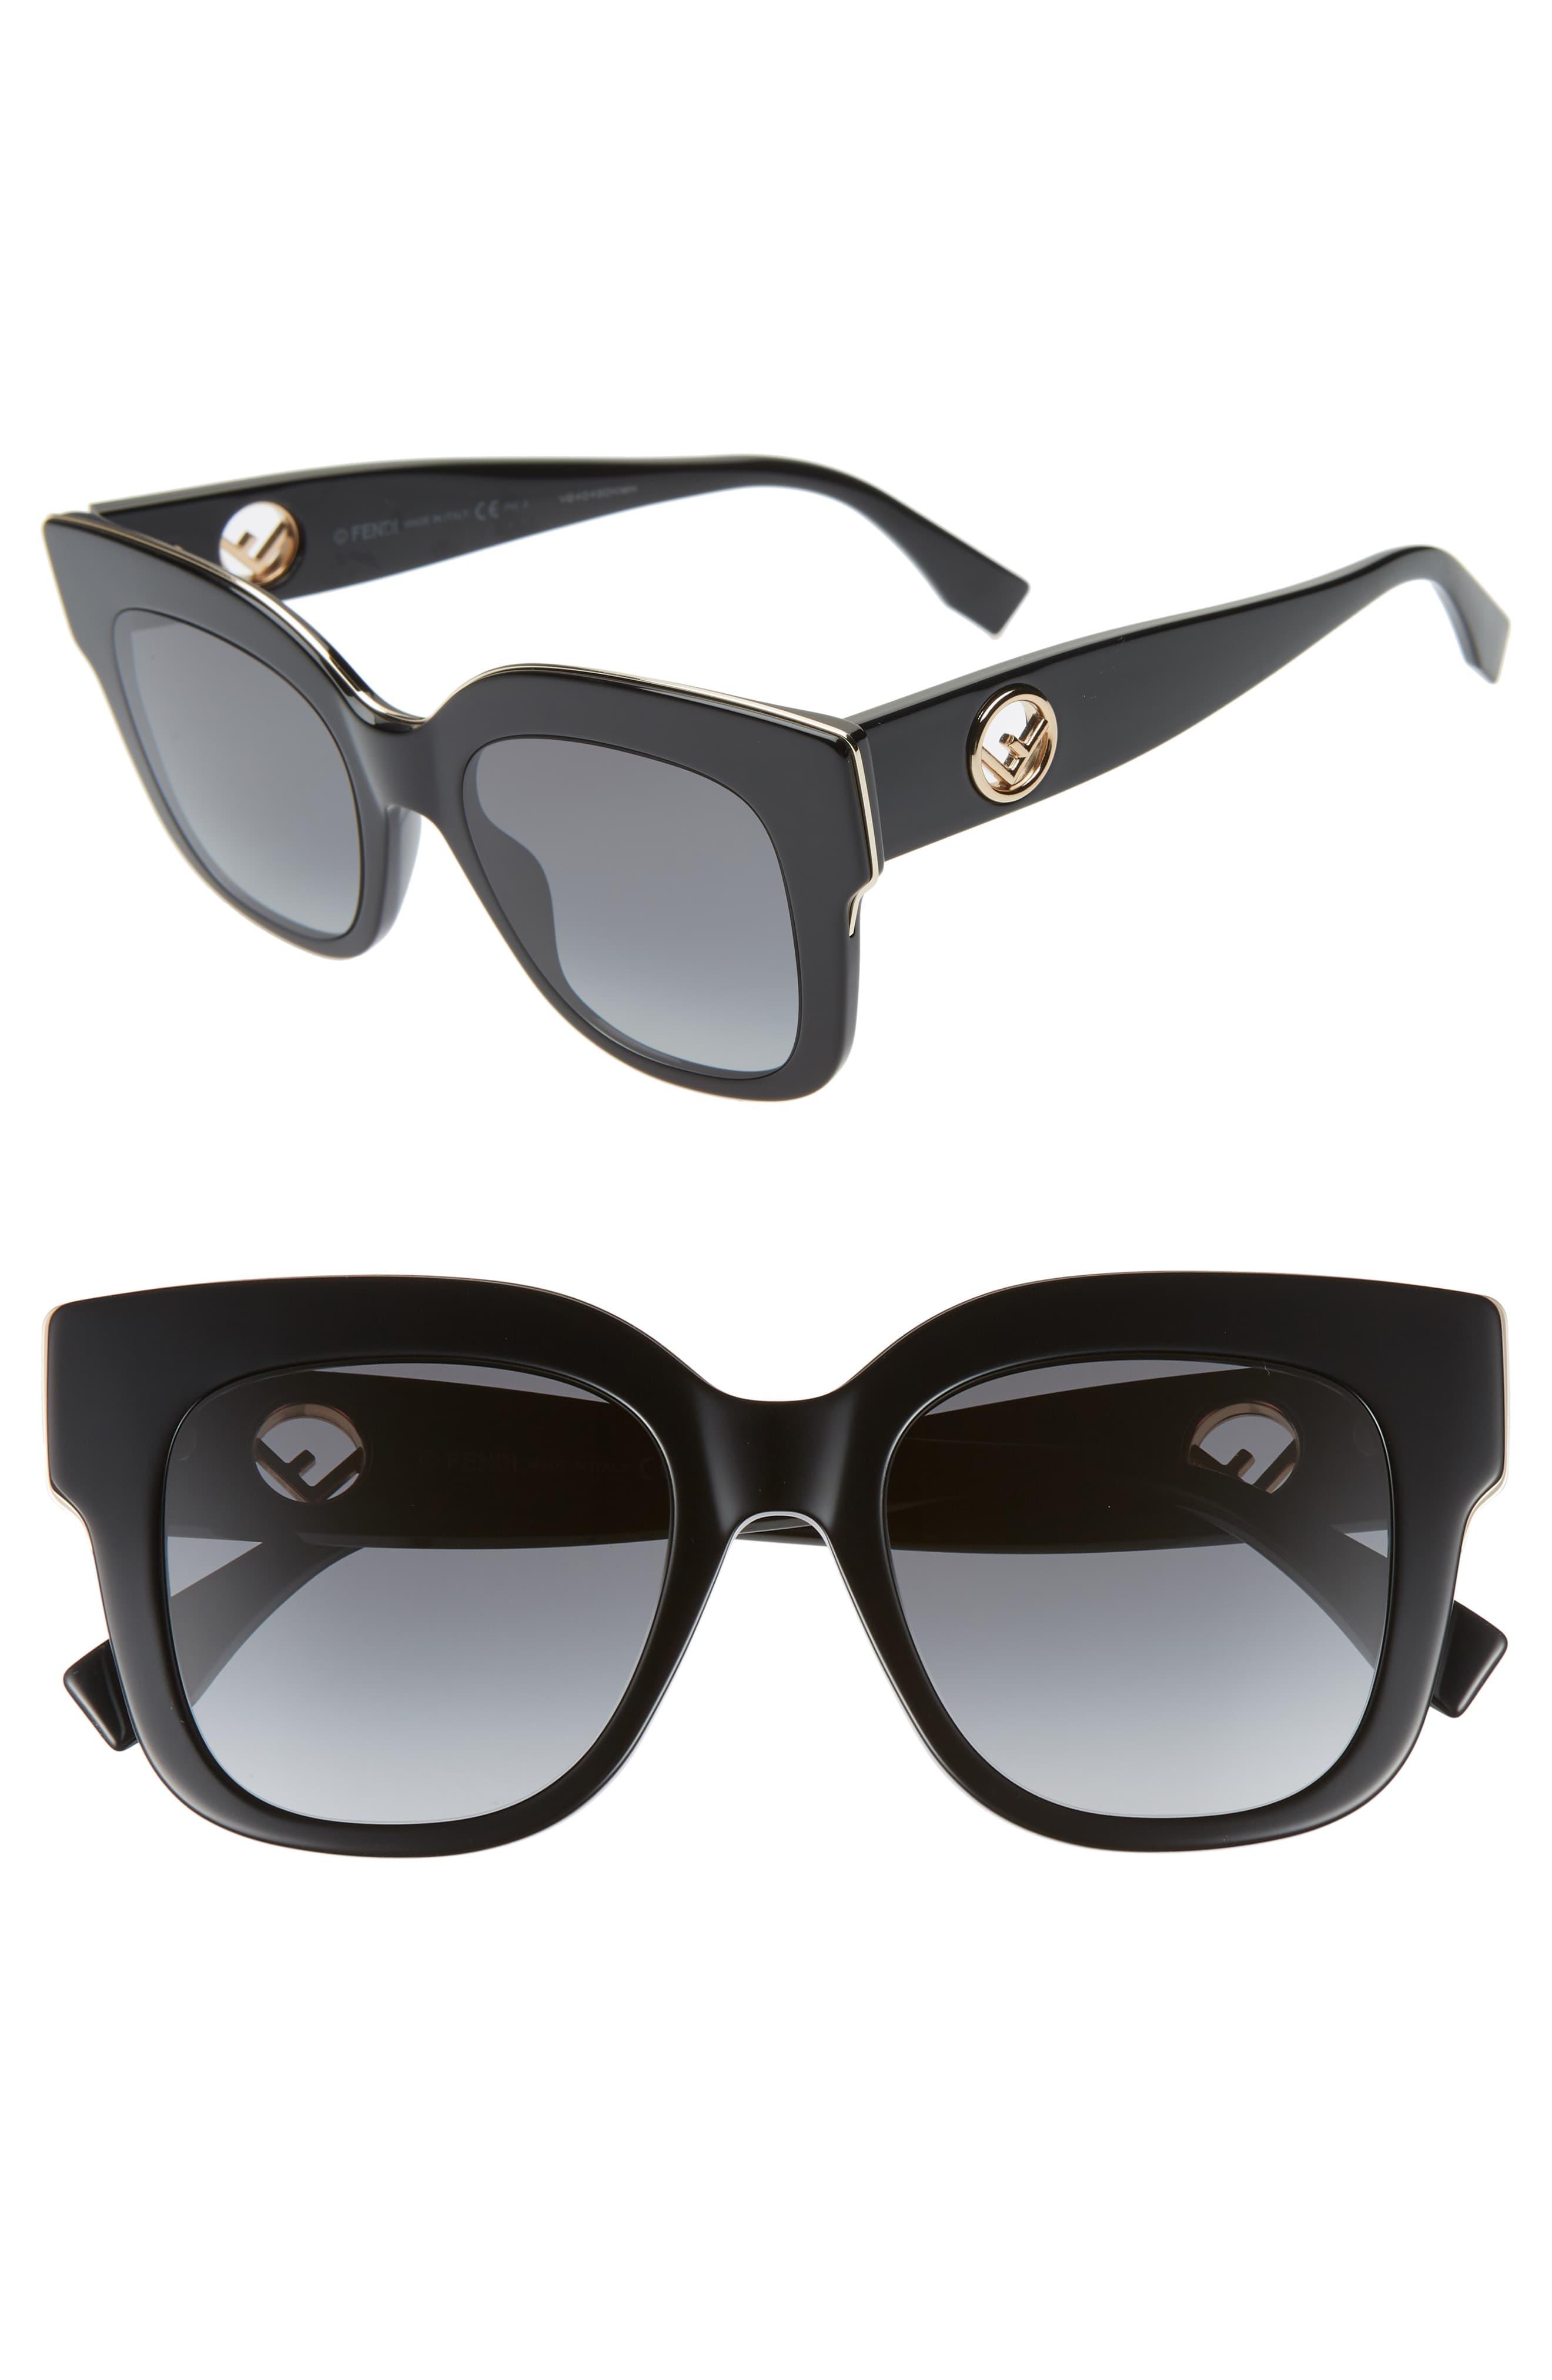 Fendi Round Acetate Sunglasses in Black - Lyst